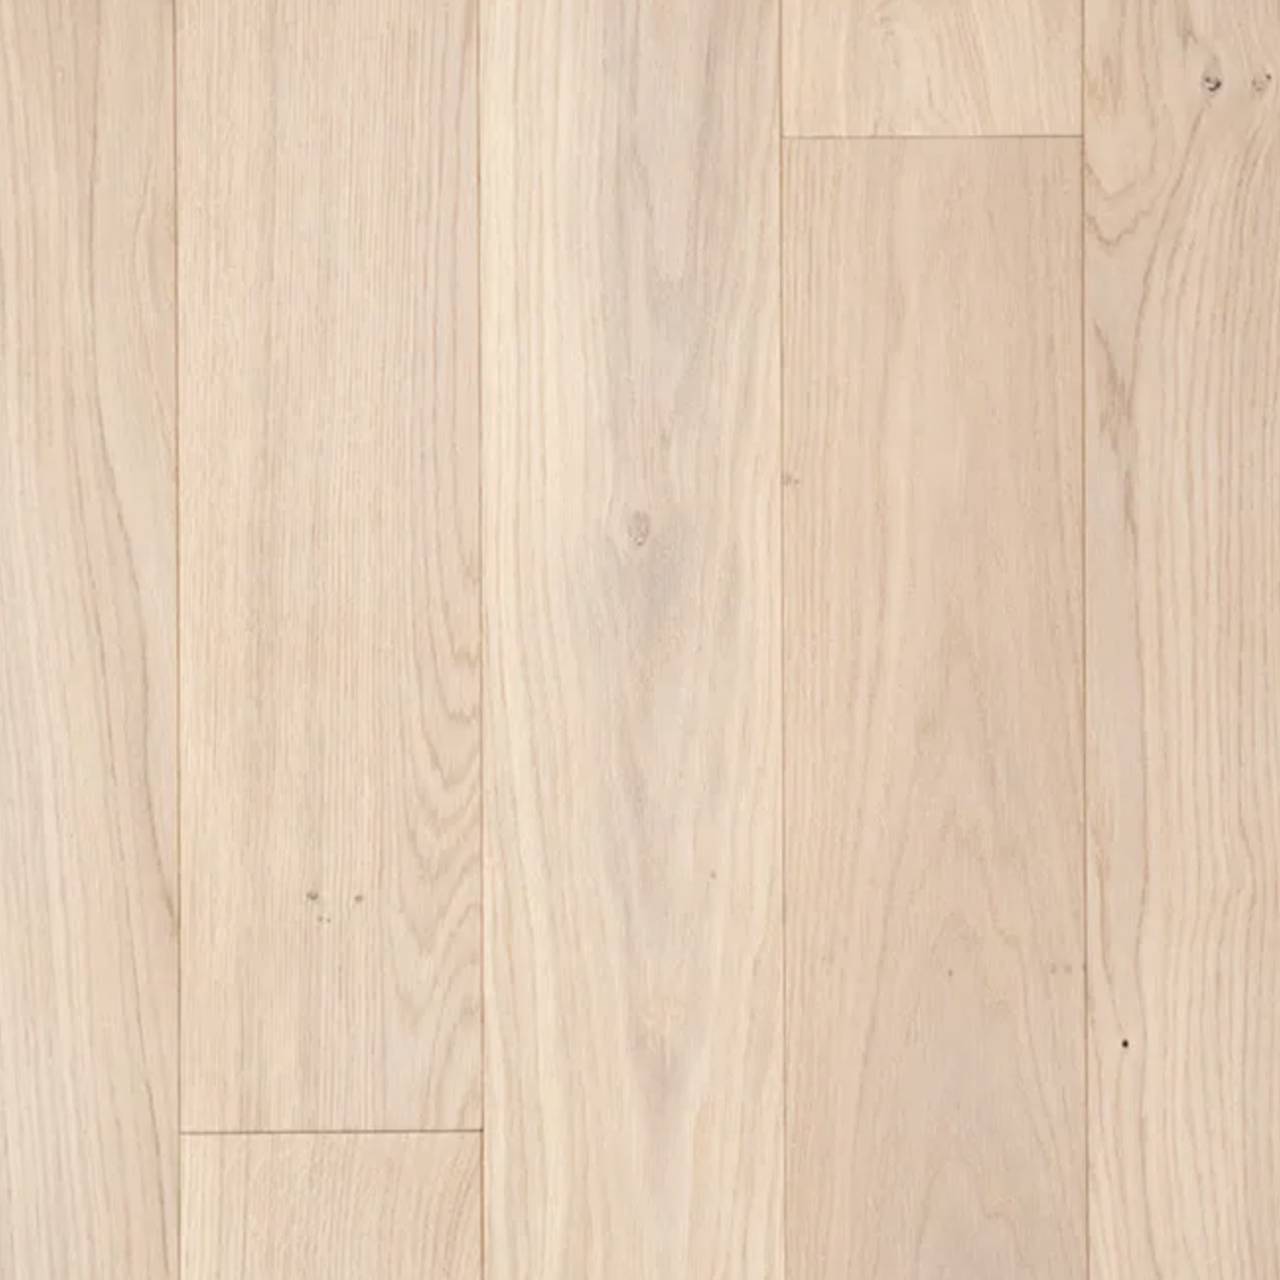 Kromlau 220mm Wide Plank Series by Luxo Floors